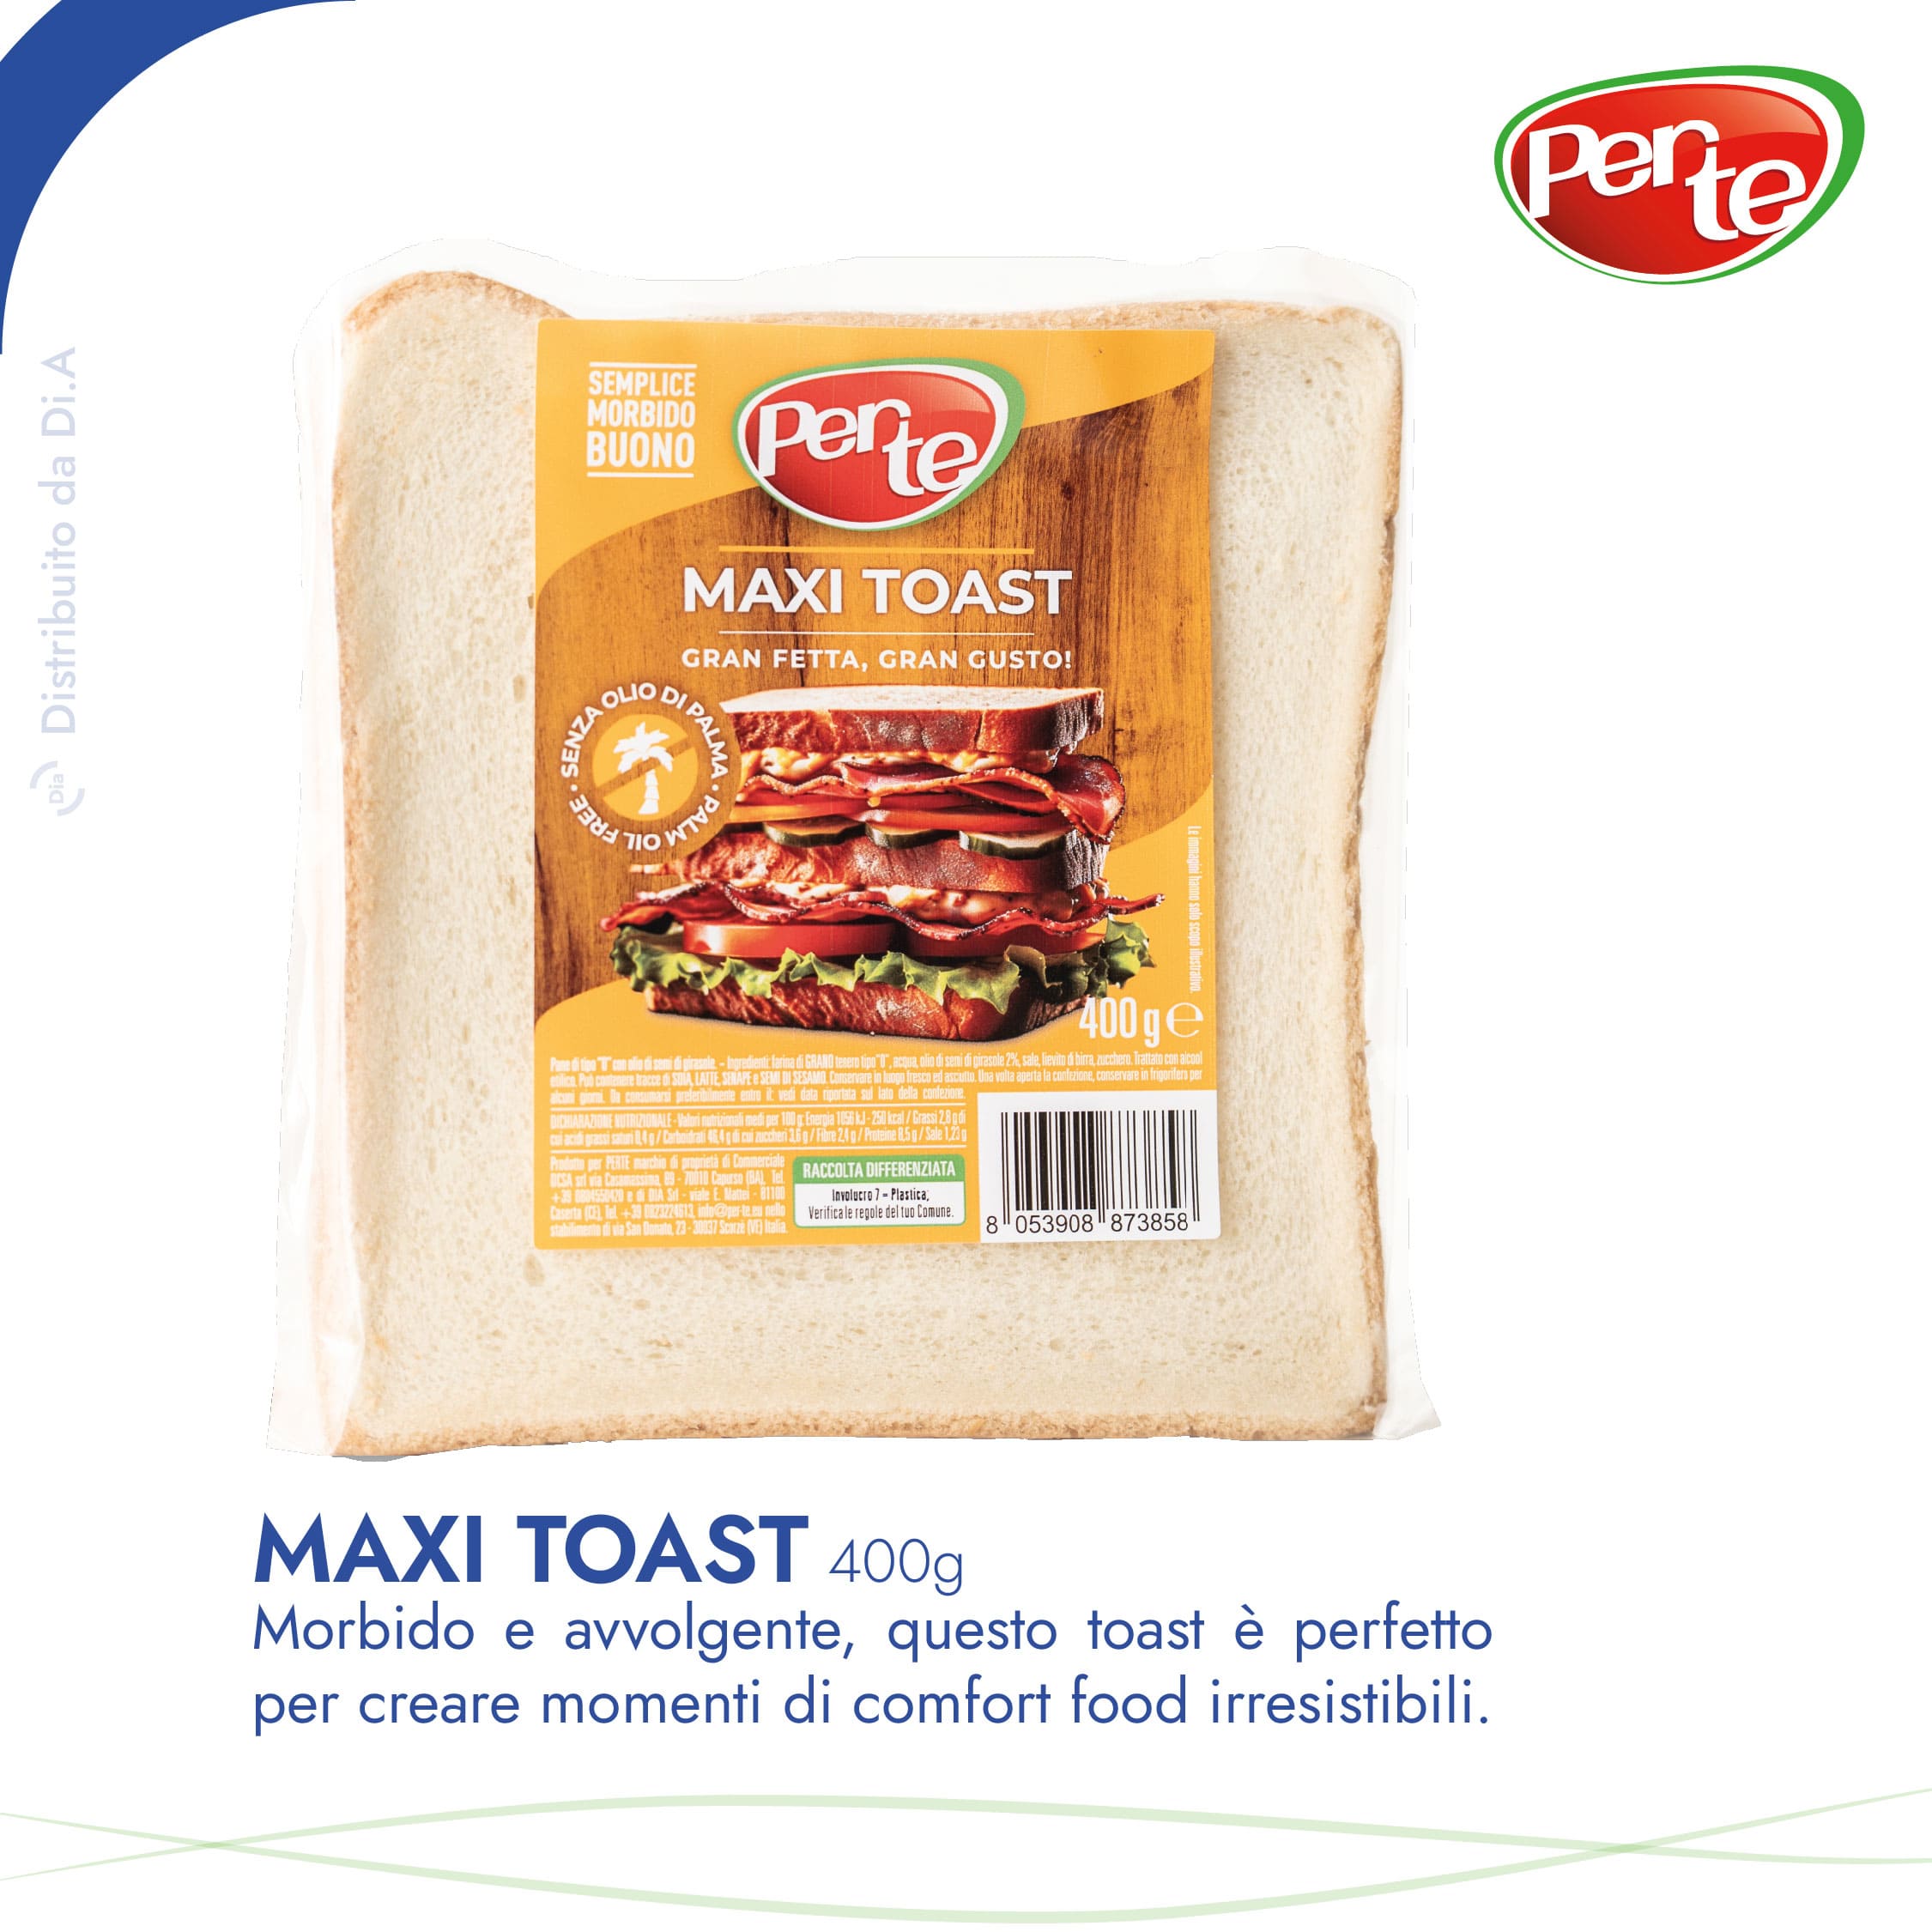 Maxi Toast 400g: Morbido e avvolgente, questo toast e perfetto per creare momenti di comfort food irresistibili.